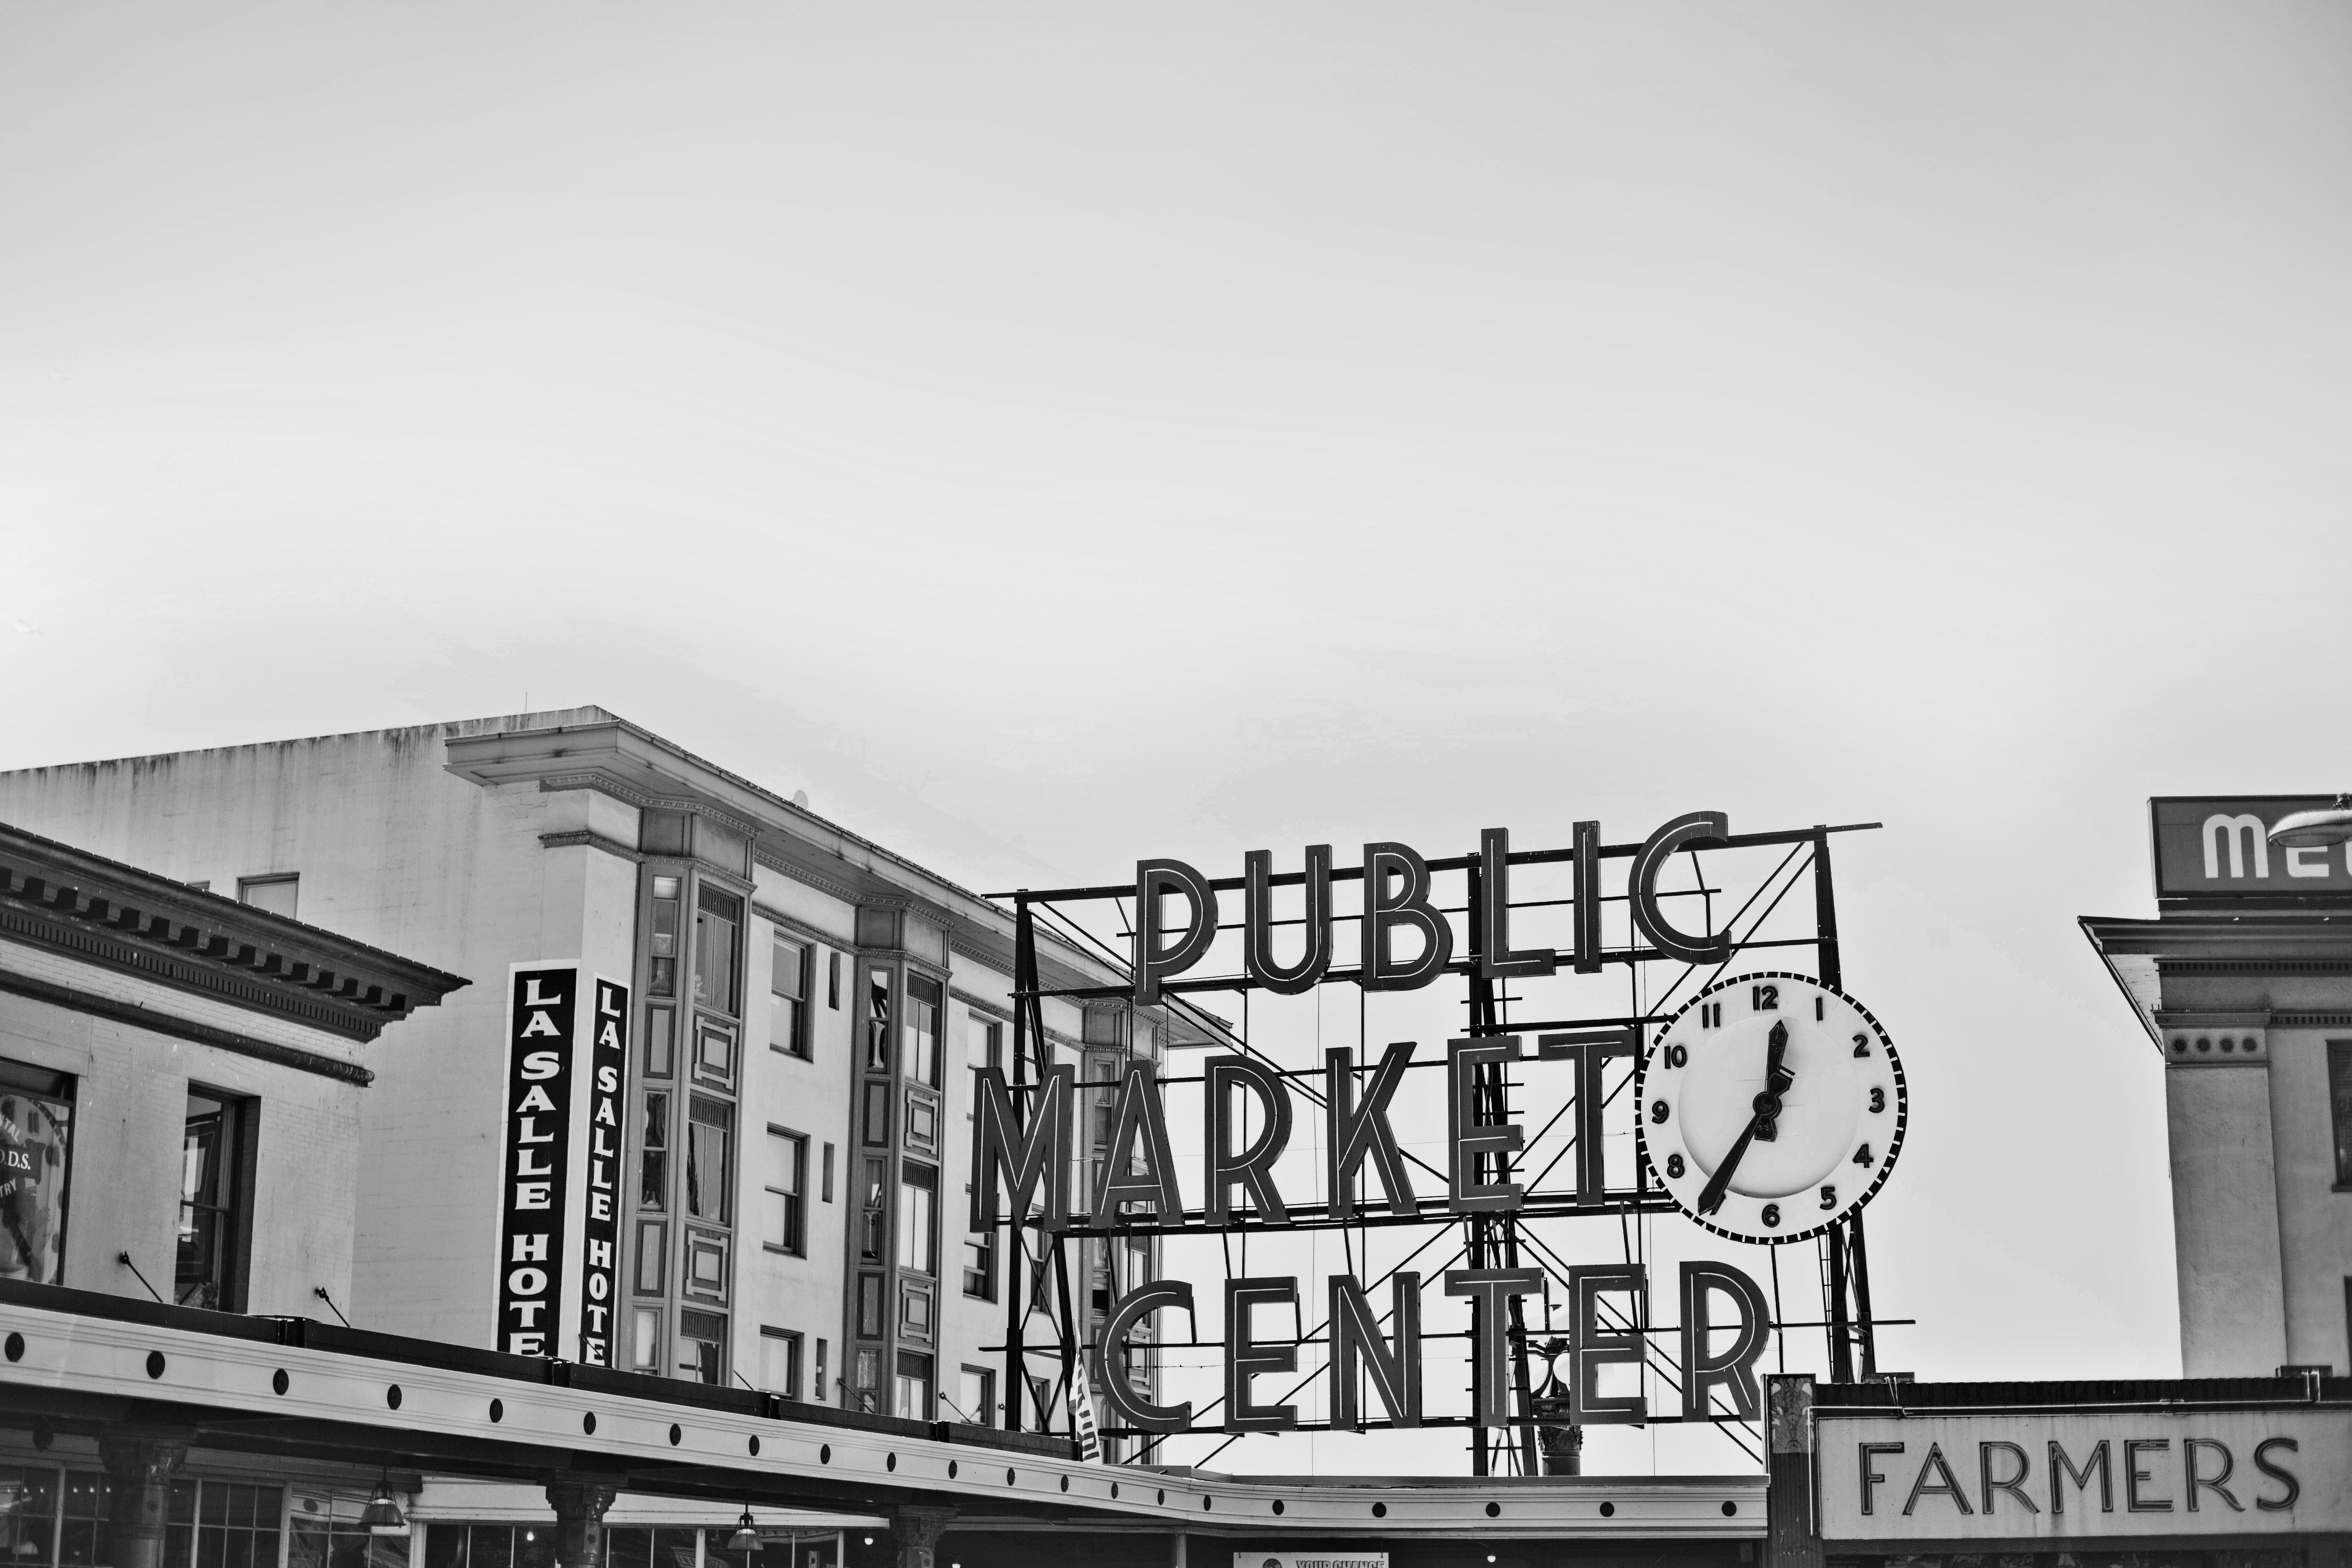 Public Market Center signage near building